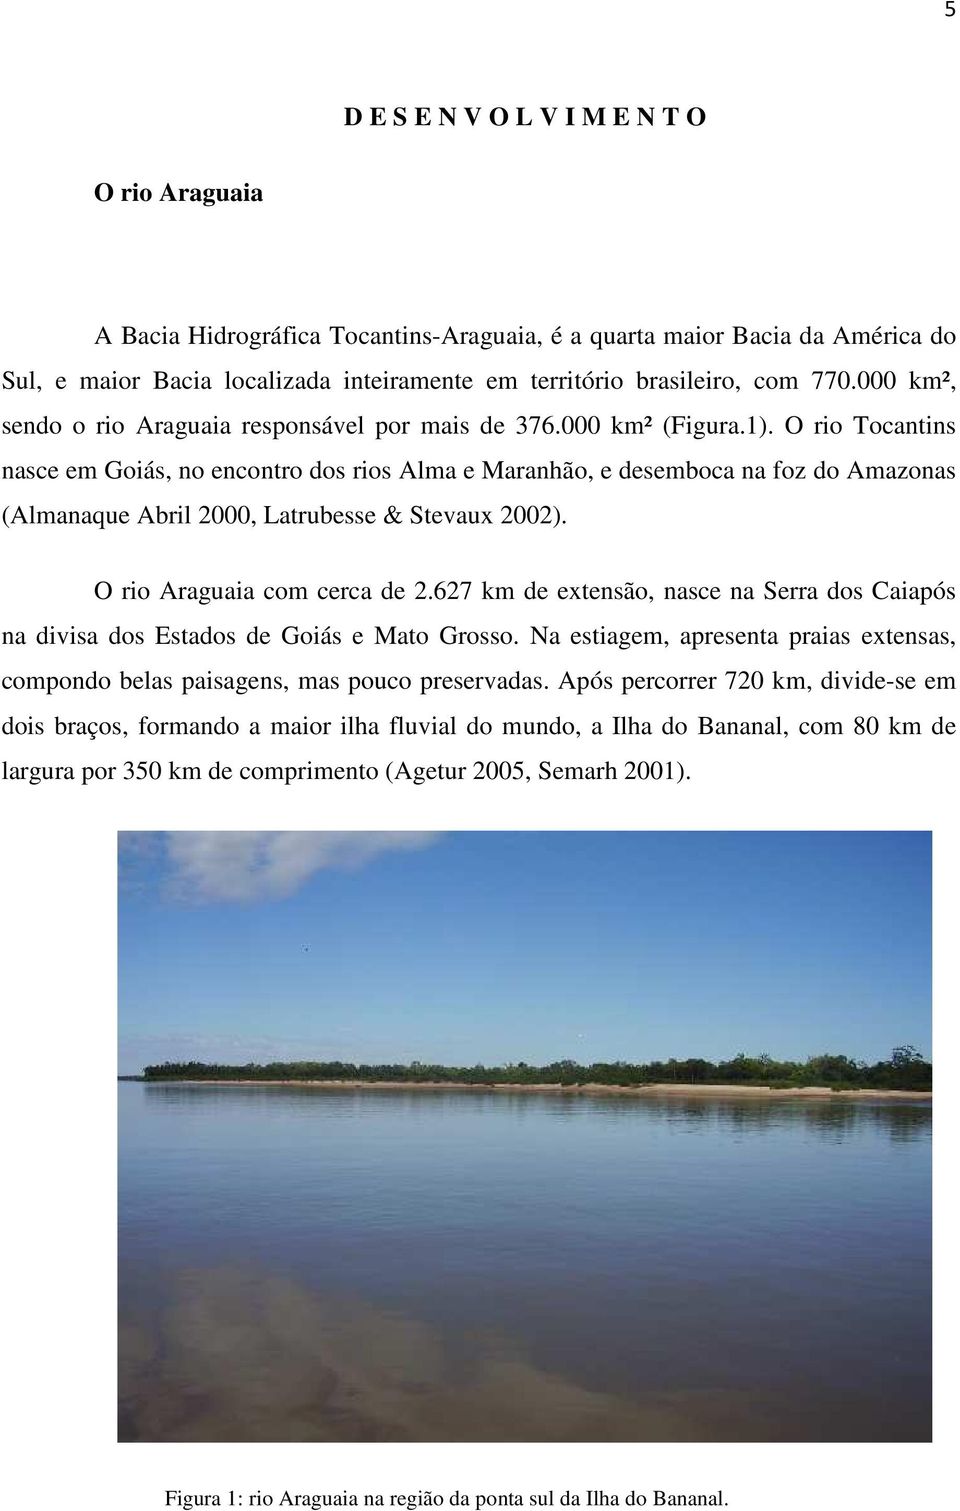 O rio Tocantins nasce em Goiás, no encontro dos rios Alma e Maranhão, e desemboca na foz do Amazonas (Almanaque Abril 2000, Latrubesse & Stevaux 2002). O rio Araguaia com cerca de 2.